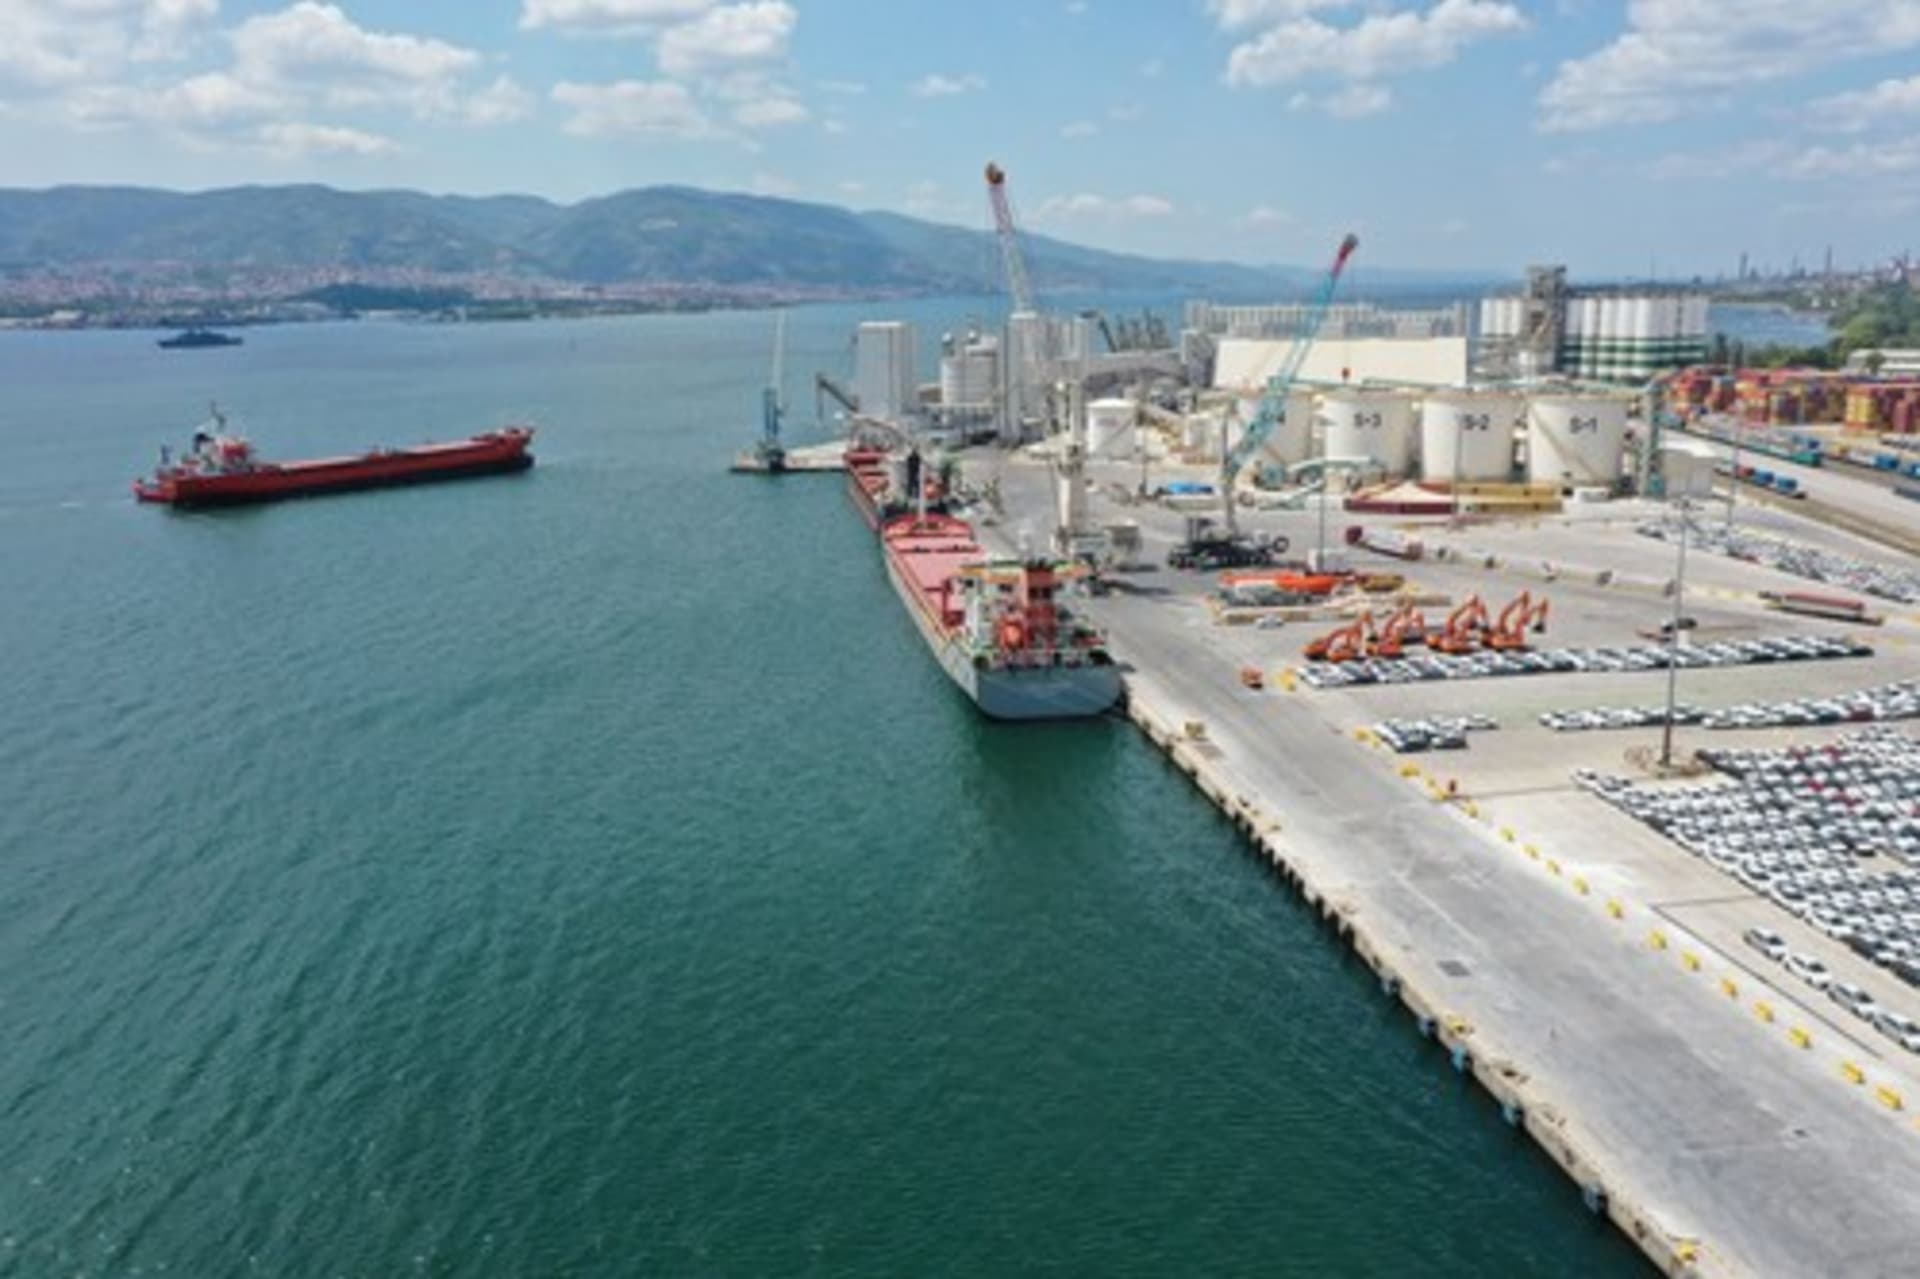 Turecký přístav Derince, kde došlo k masivní explozi